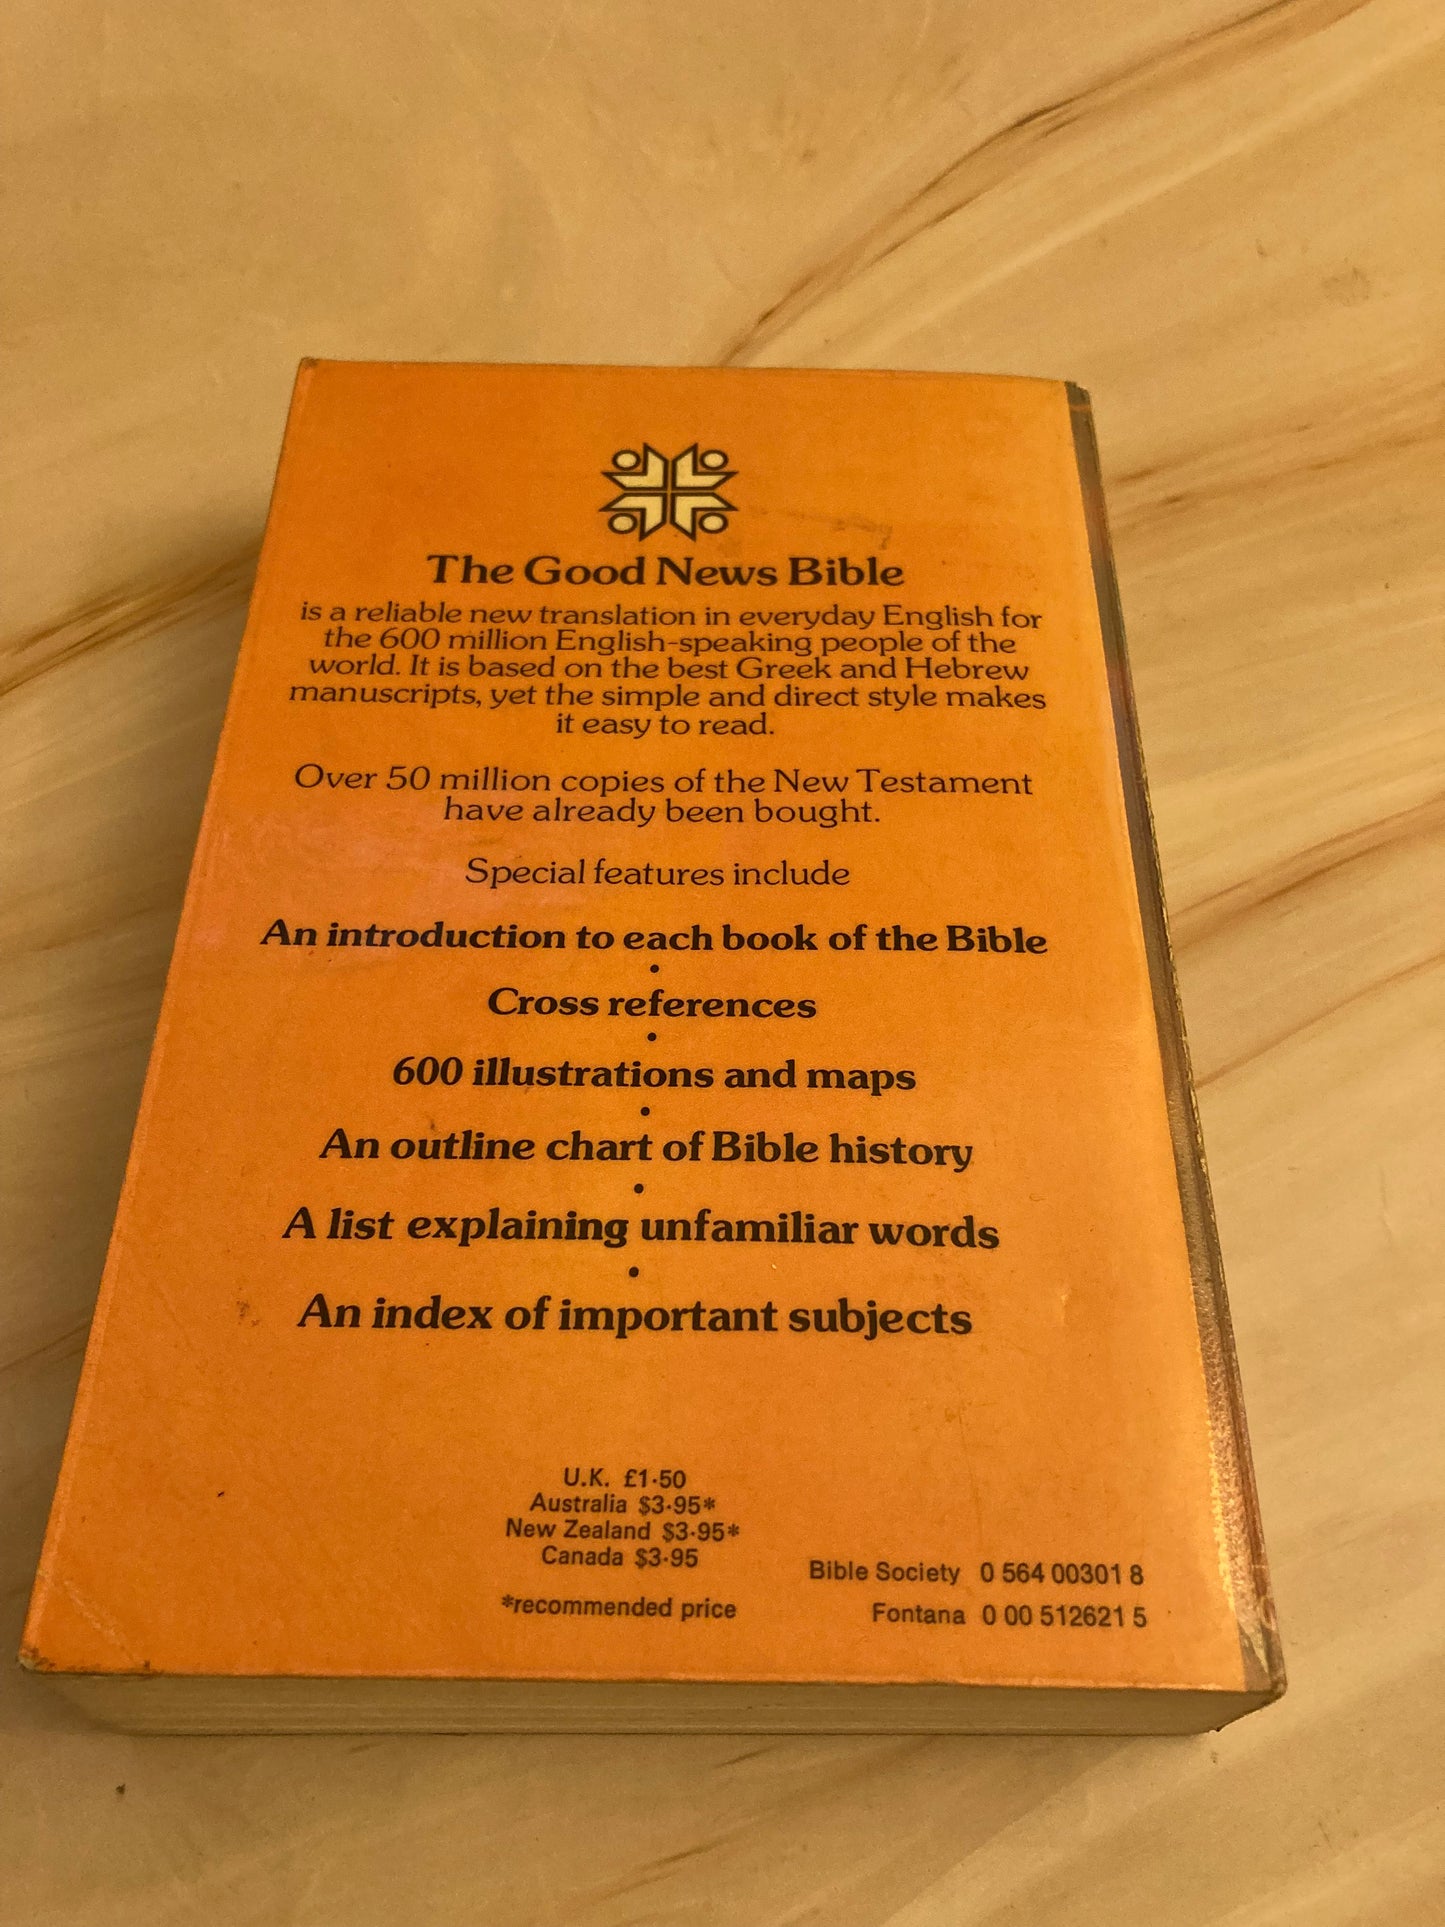 Good News Bible 1976 - (Ref X166)